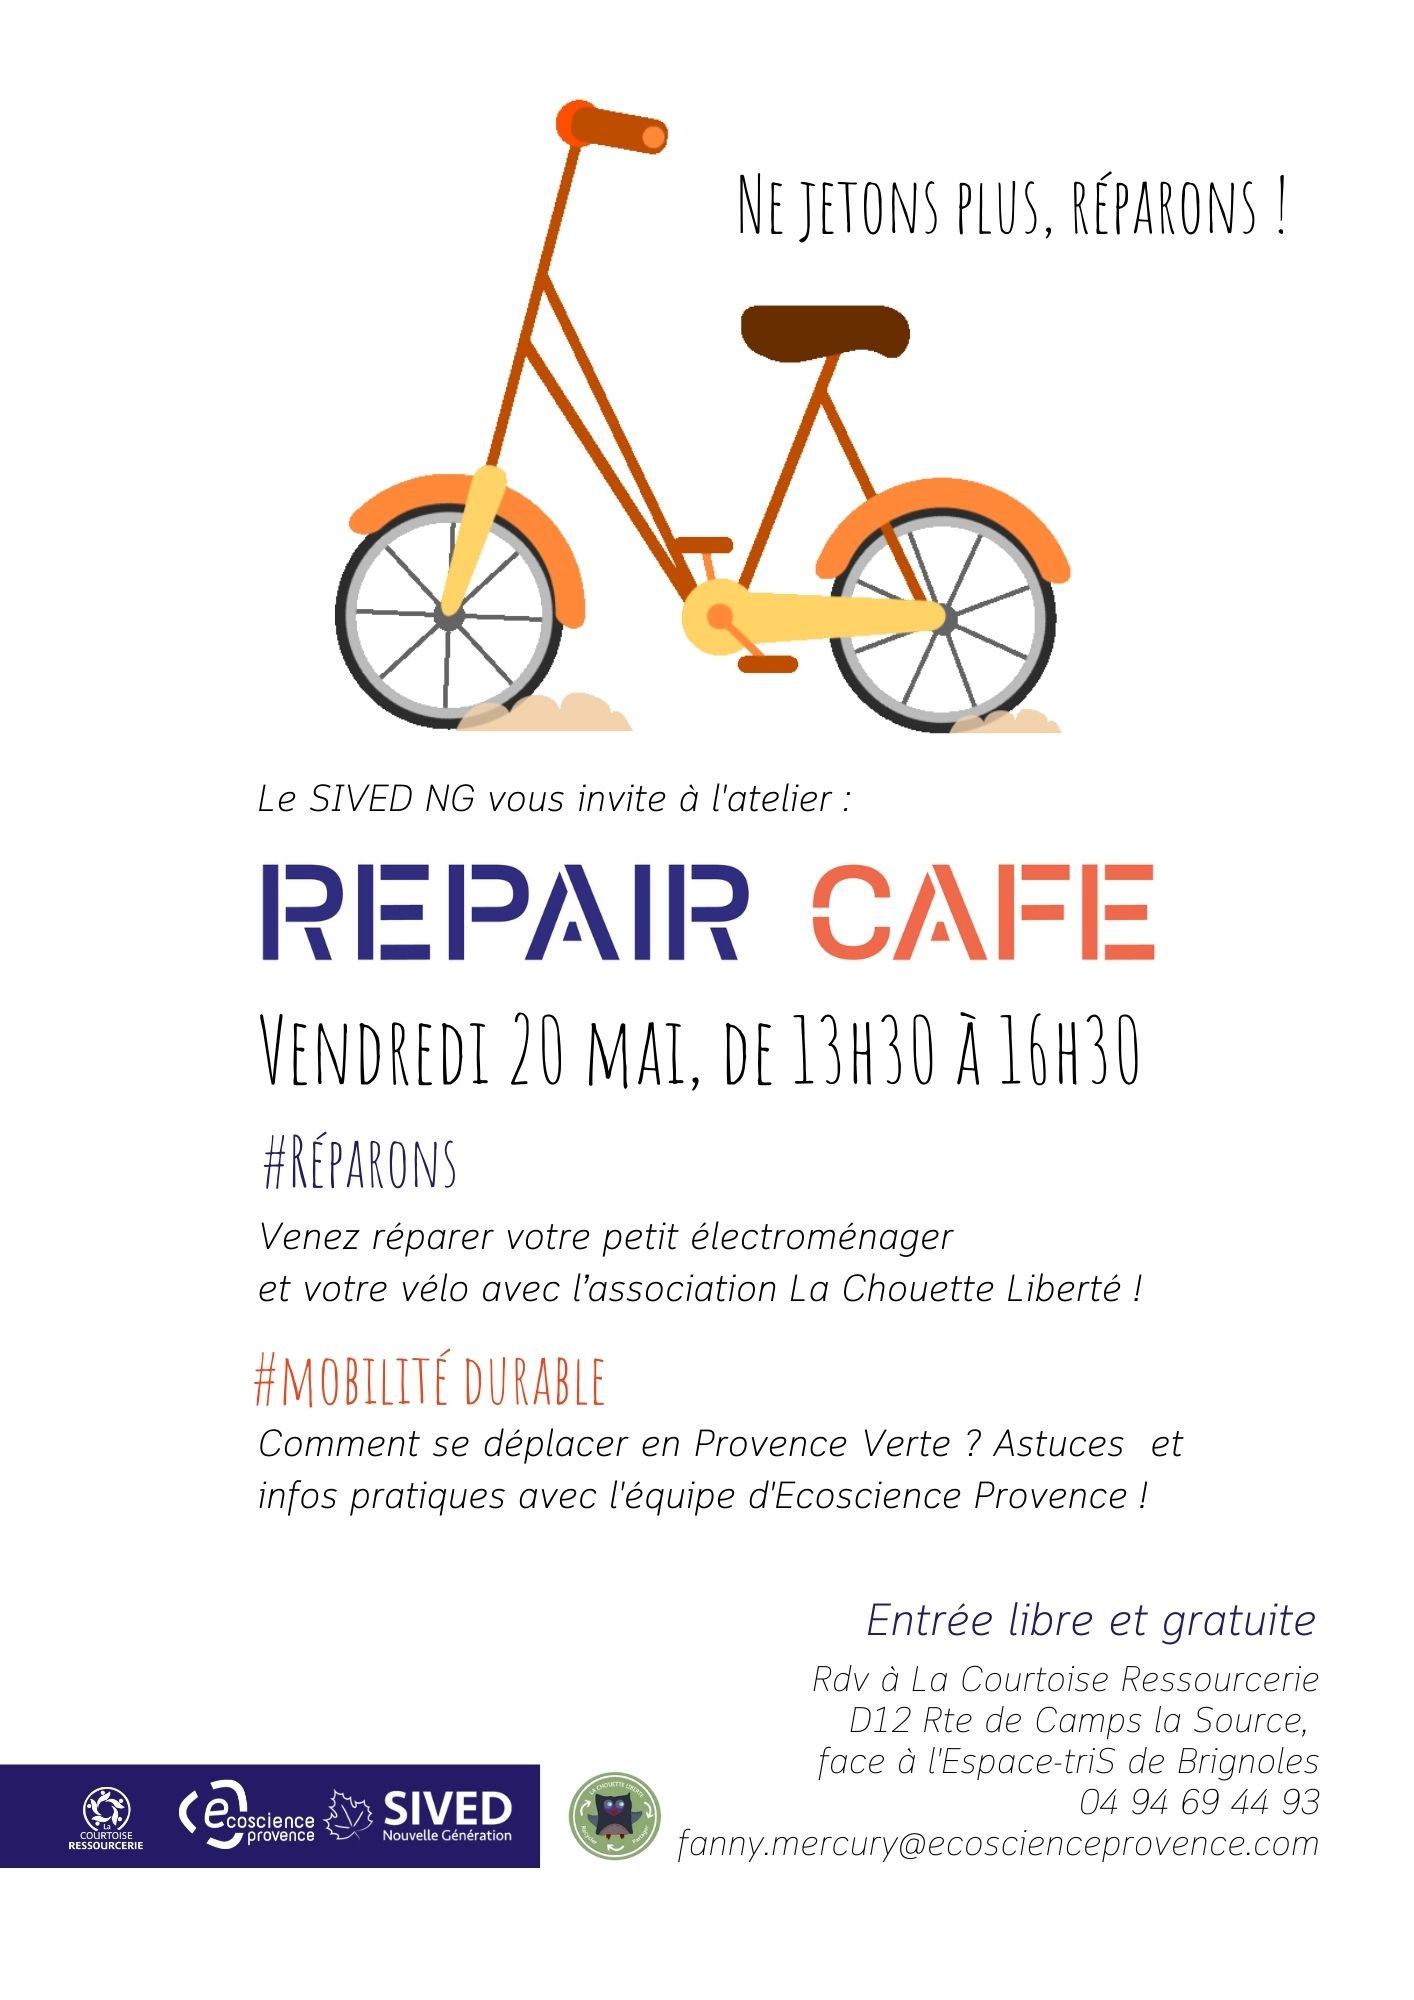 REPAIR CAFE A LA COURTOISE RESSOURCERIE DE BRIGNOLES VENDREDI 20 MAI DE 13H30 A 16H30